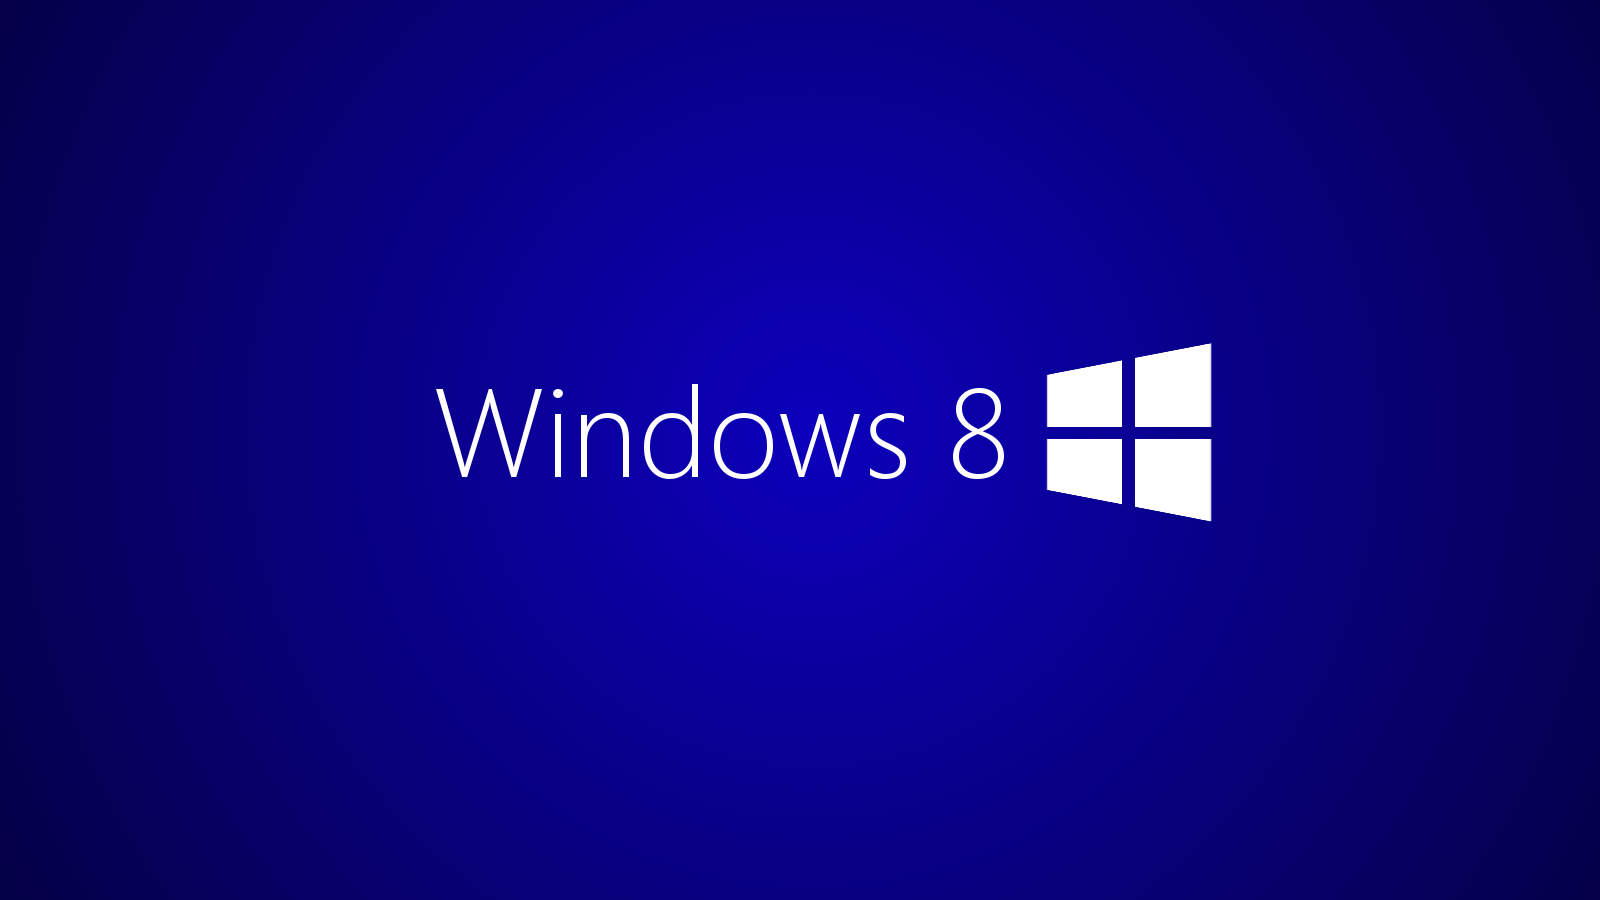 Windows 8 Official Logo Widescreen 2 HD Wallpaper. Hdwalljoy